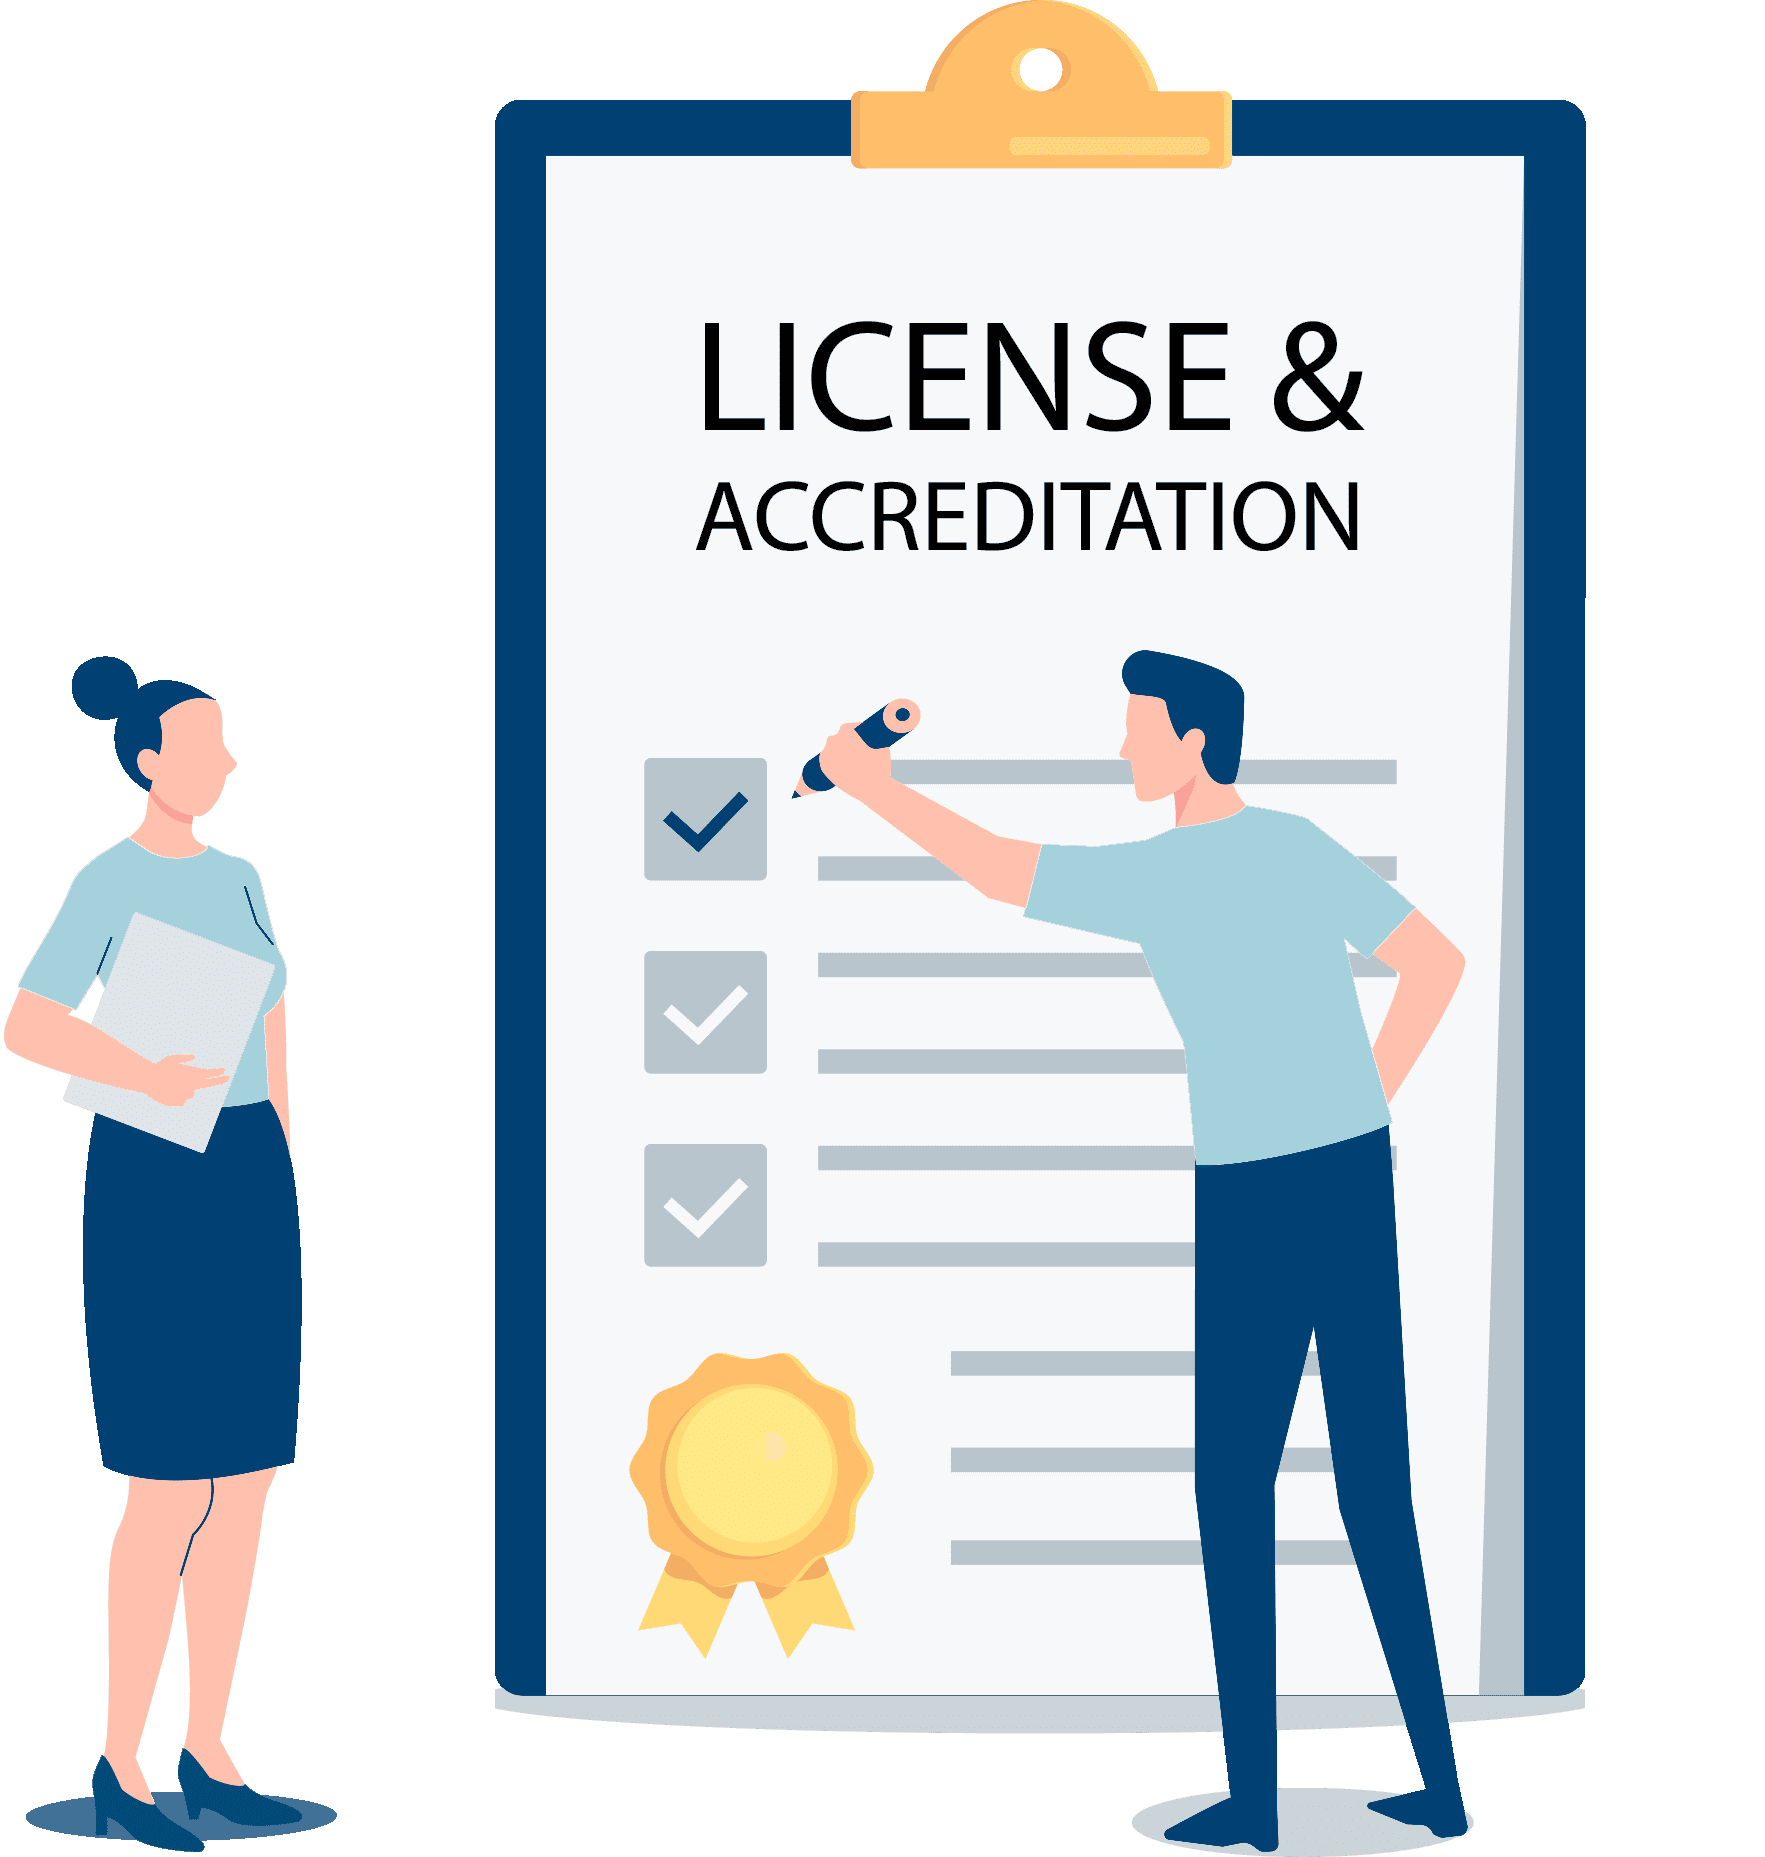 licenseaccreditation2